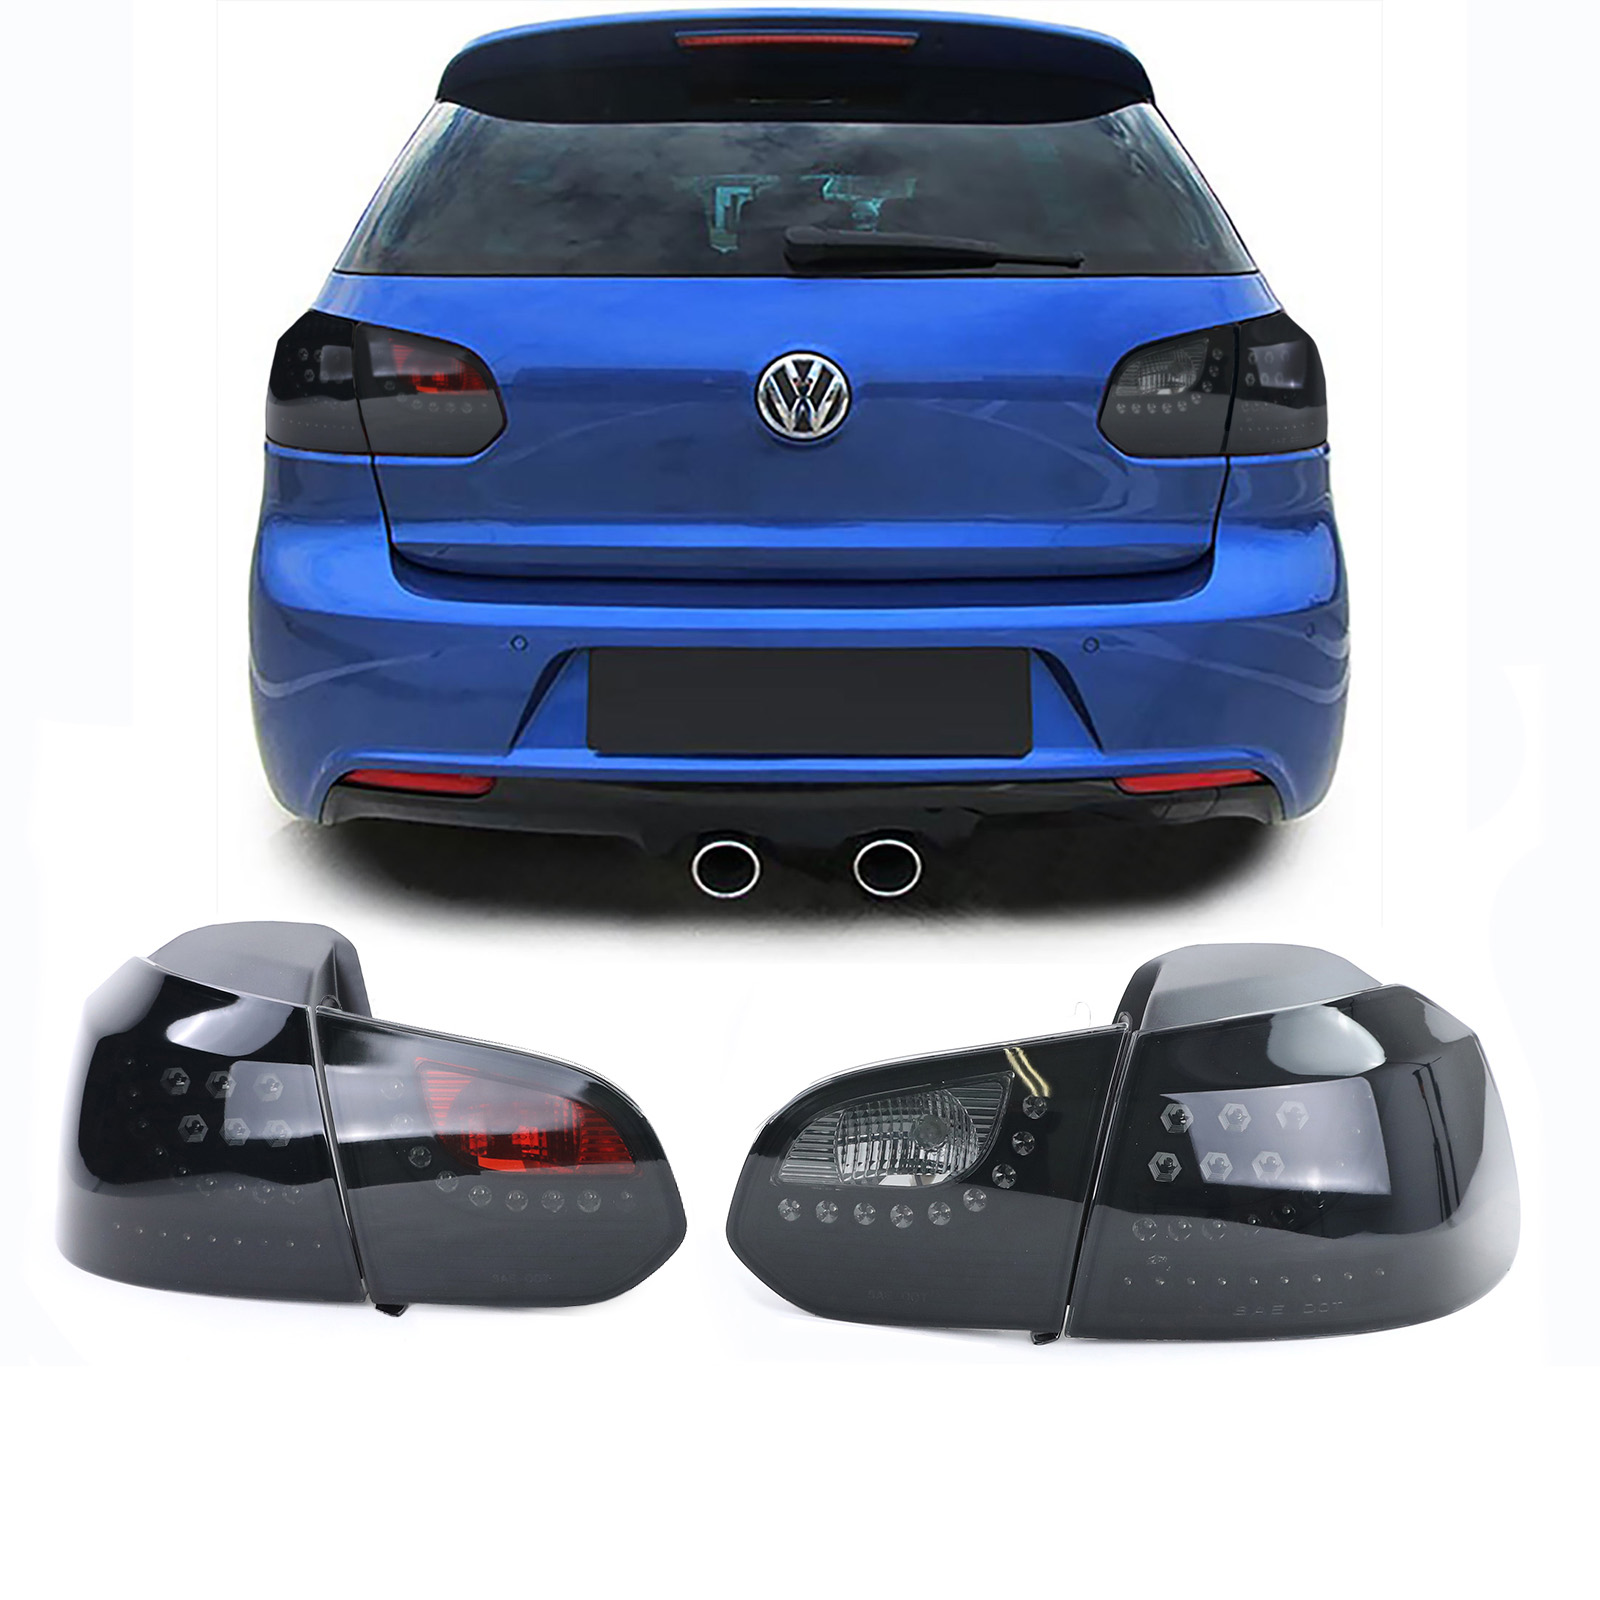 2 VW Golf 6 Rückleuchten in dynamischer Oled-Optik - LED - getönt 